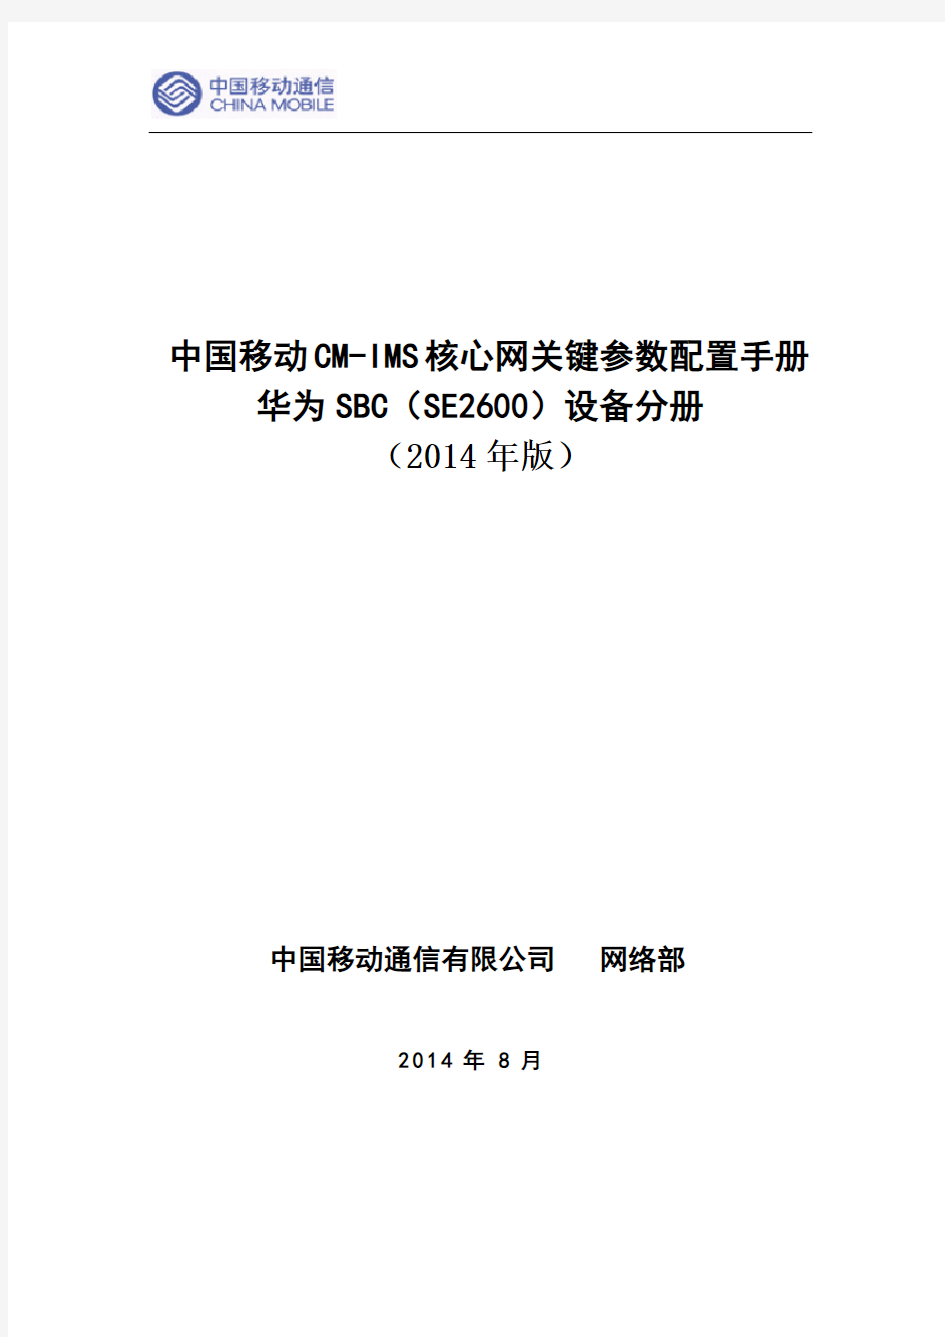 (修订后)中国移动CM-IMS核心网设备关键参数配置手册--华为SBC(SE2600)分册